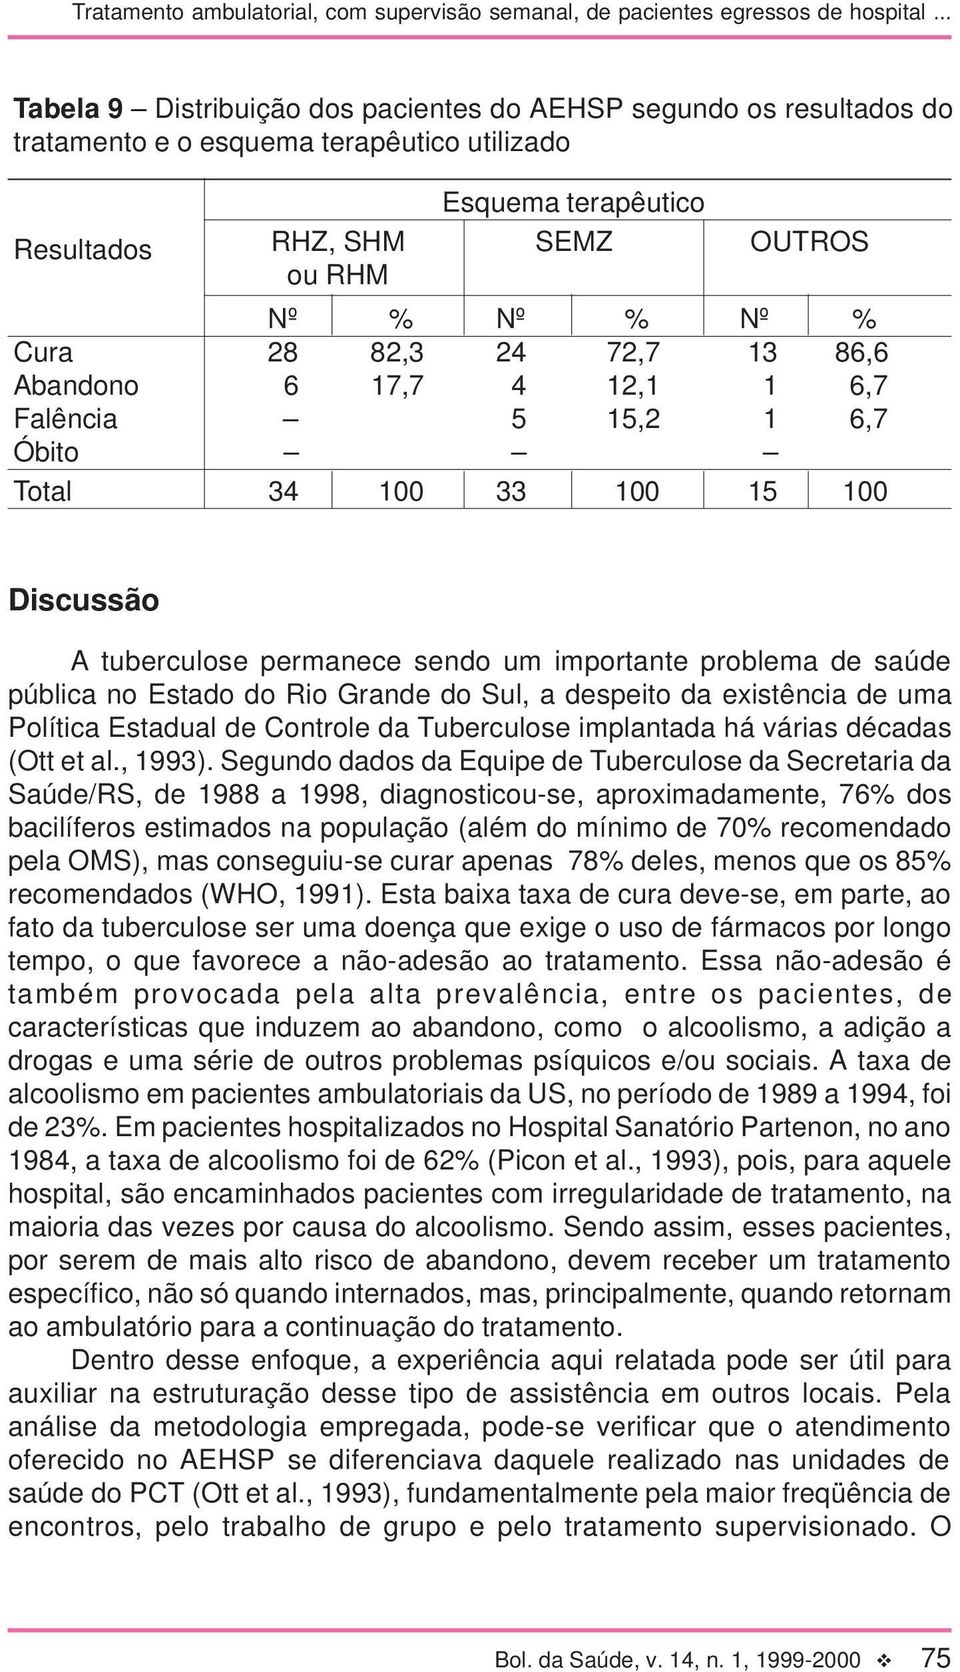 Rio Grande do Sul, a despeito da existência de uma Política Estadual de Controle da Tuberculose implantada há várias décadas (Ott et al., 1993).